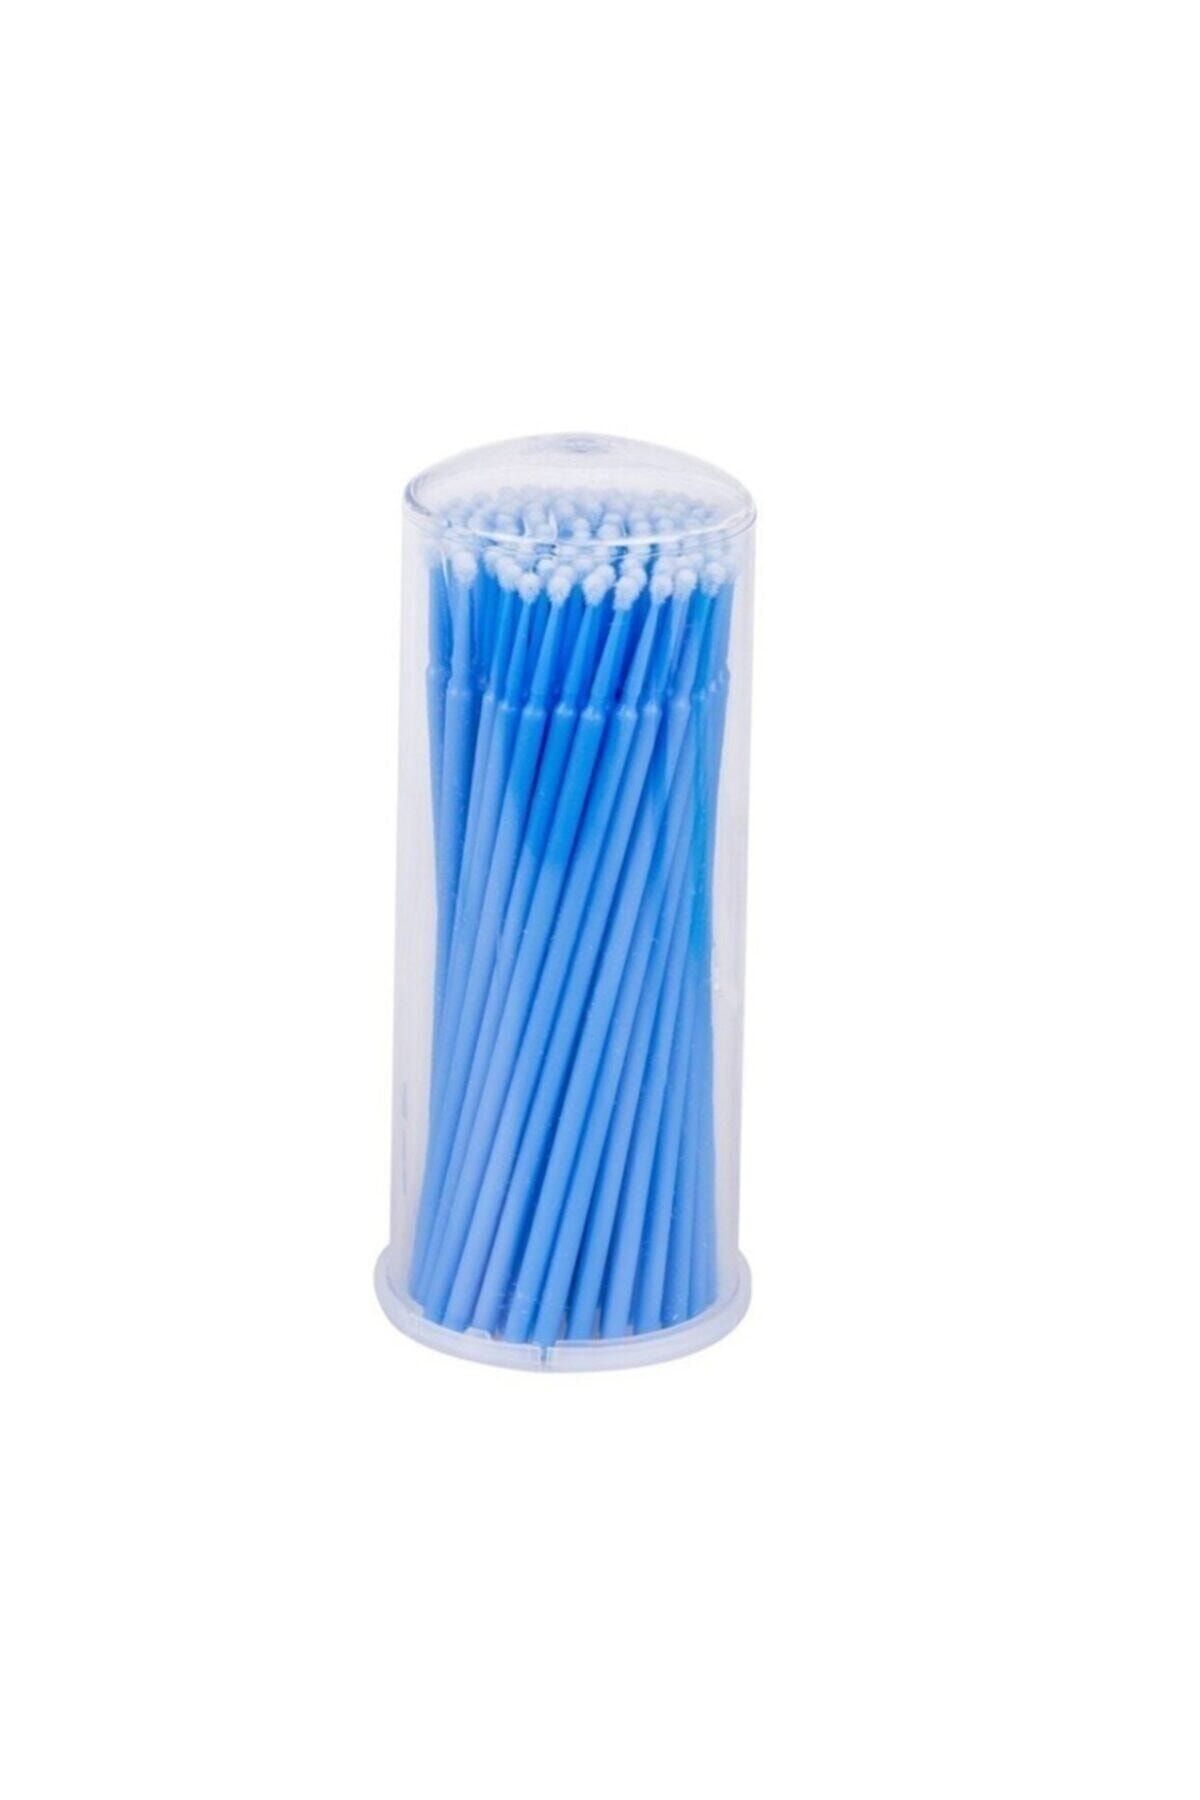 Micro Brush Ipek Kirpik Ve Blading Fırçası 100 Adet